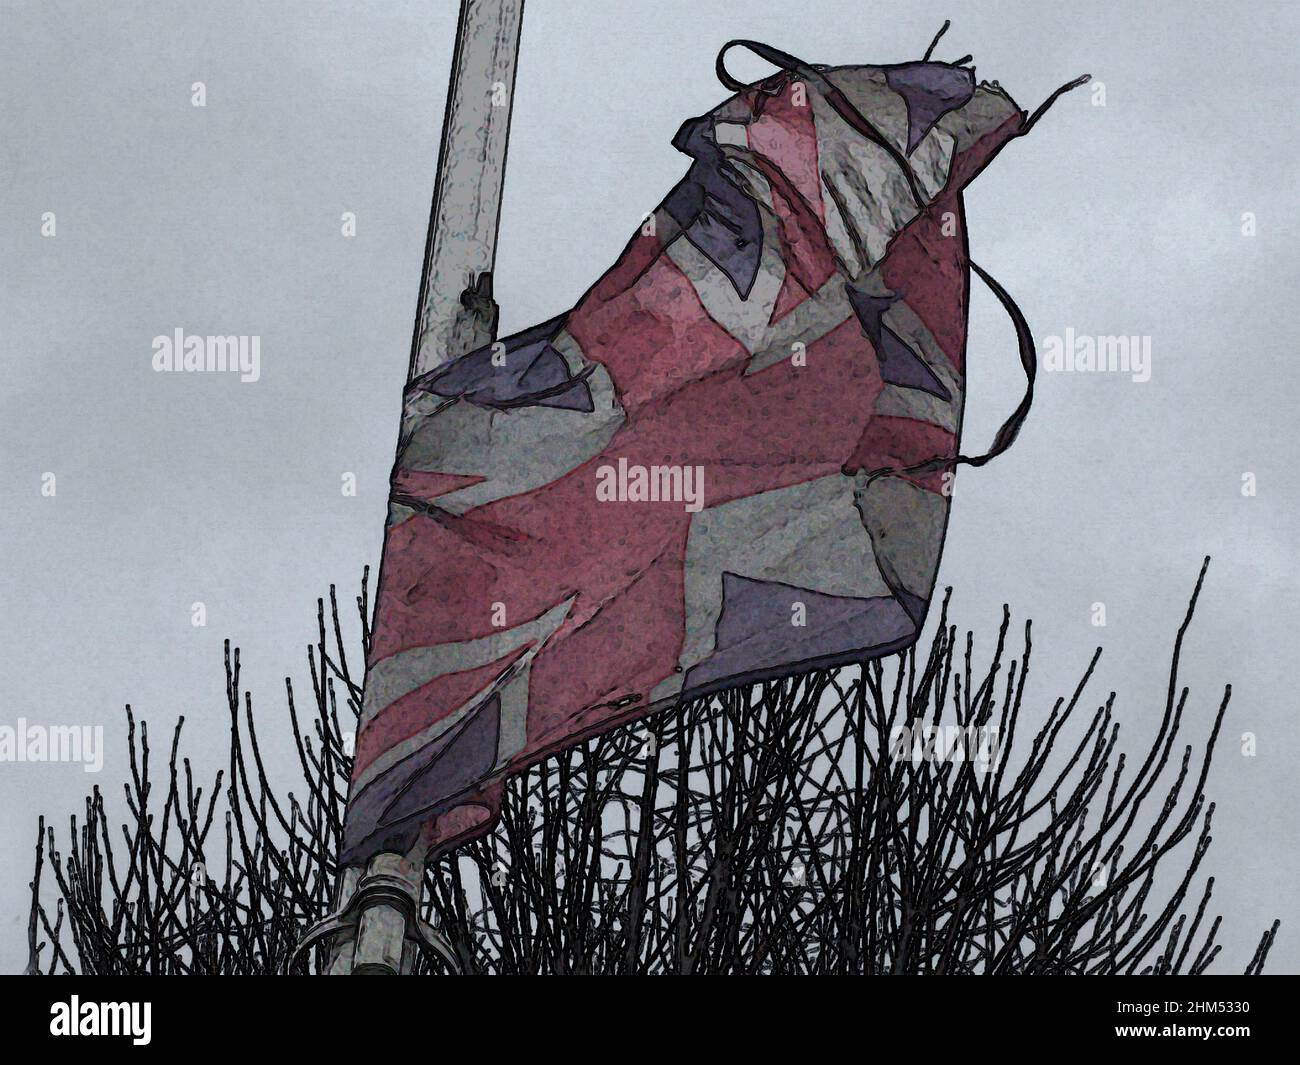 Concept Art nach dem Brexit Großbritannien zerfetzt verblasste Union Jack-Flagge vor dem Hintergrund von Dornen und grauem Himmel Korruption, Verlust von internationalem Respekt/Stolz Stockfoto